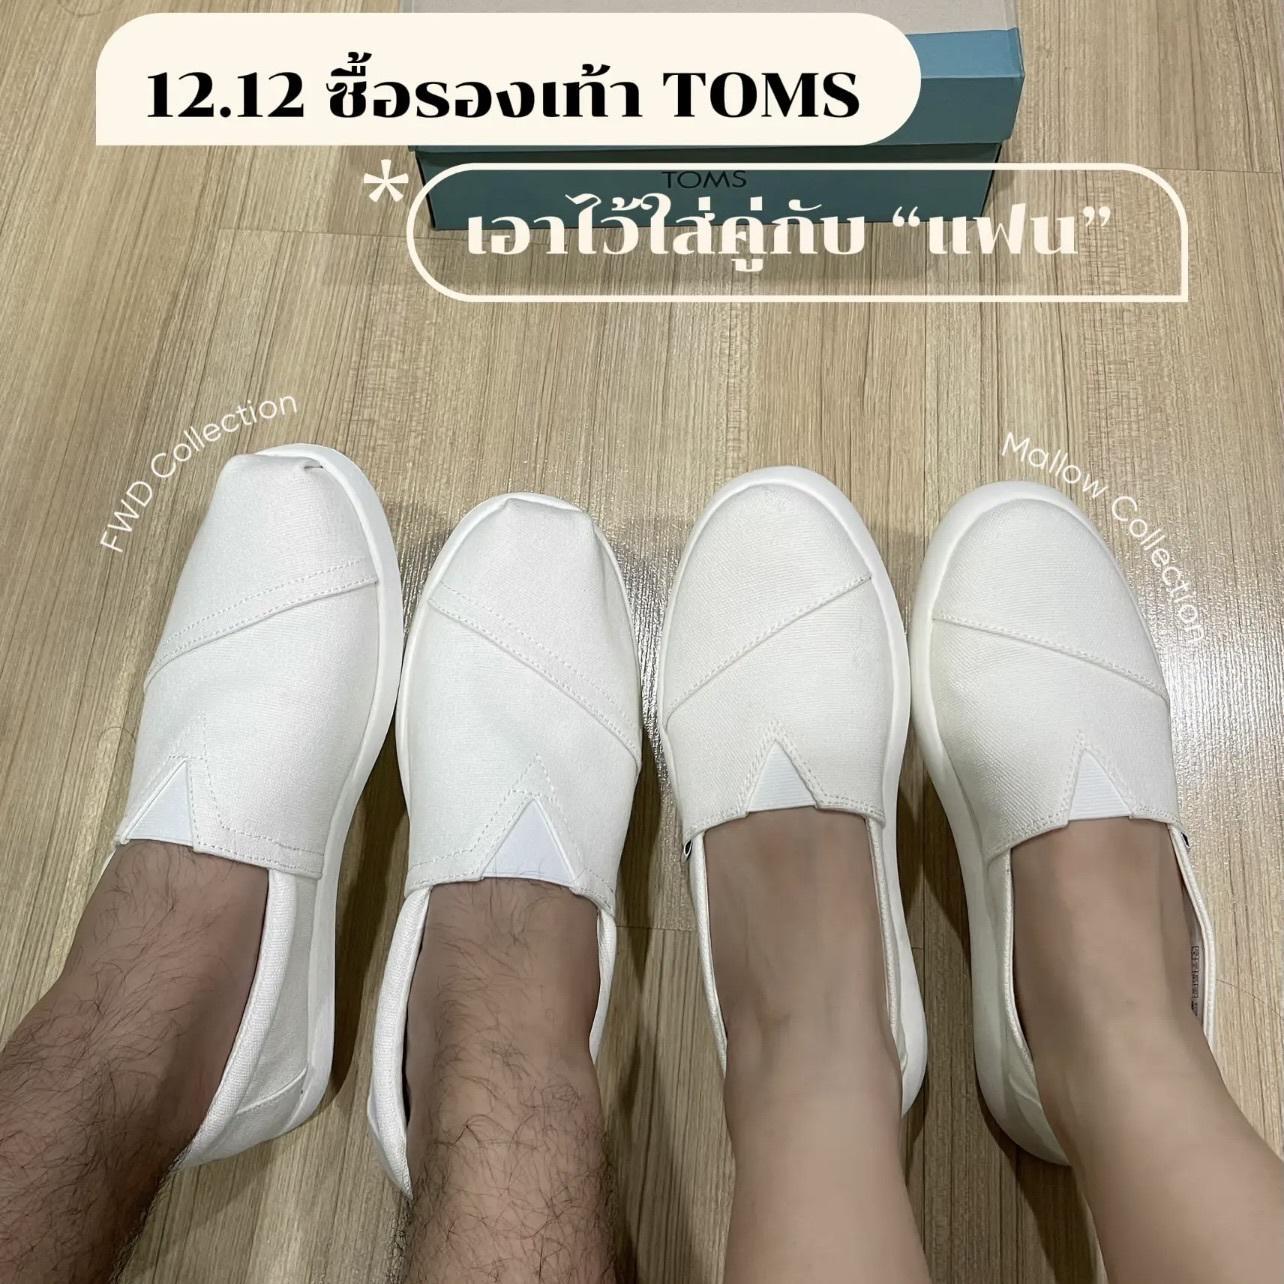 ภาพหน้าปก 12.12 ซื้อรองเท้า Toms ใส่คู่กับแฟน😍 ที่:0